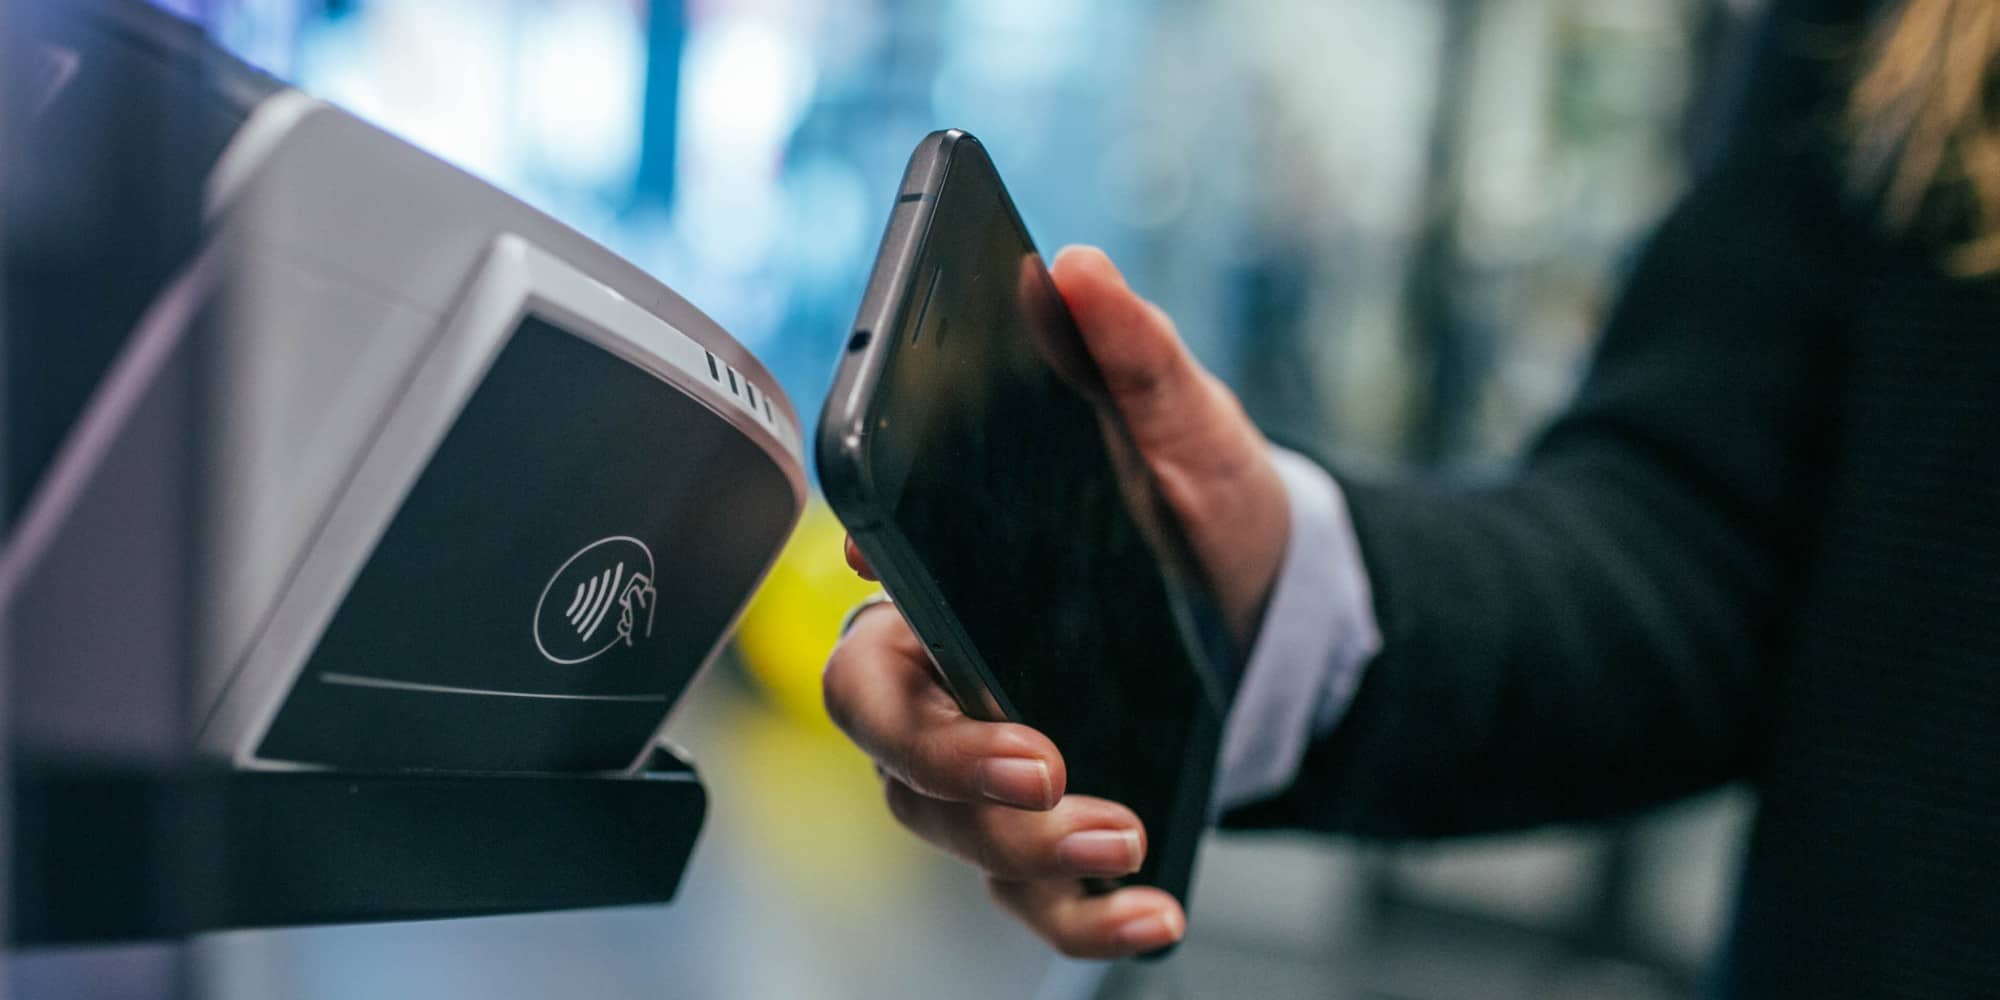 Ηλεκτρονική πληρωμή μέσω κινητού με ψηφιακό πορτοφόλι